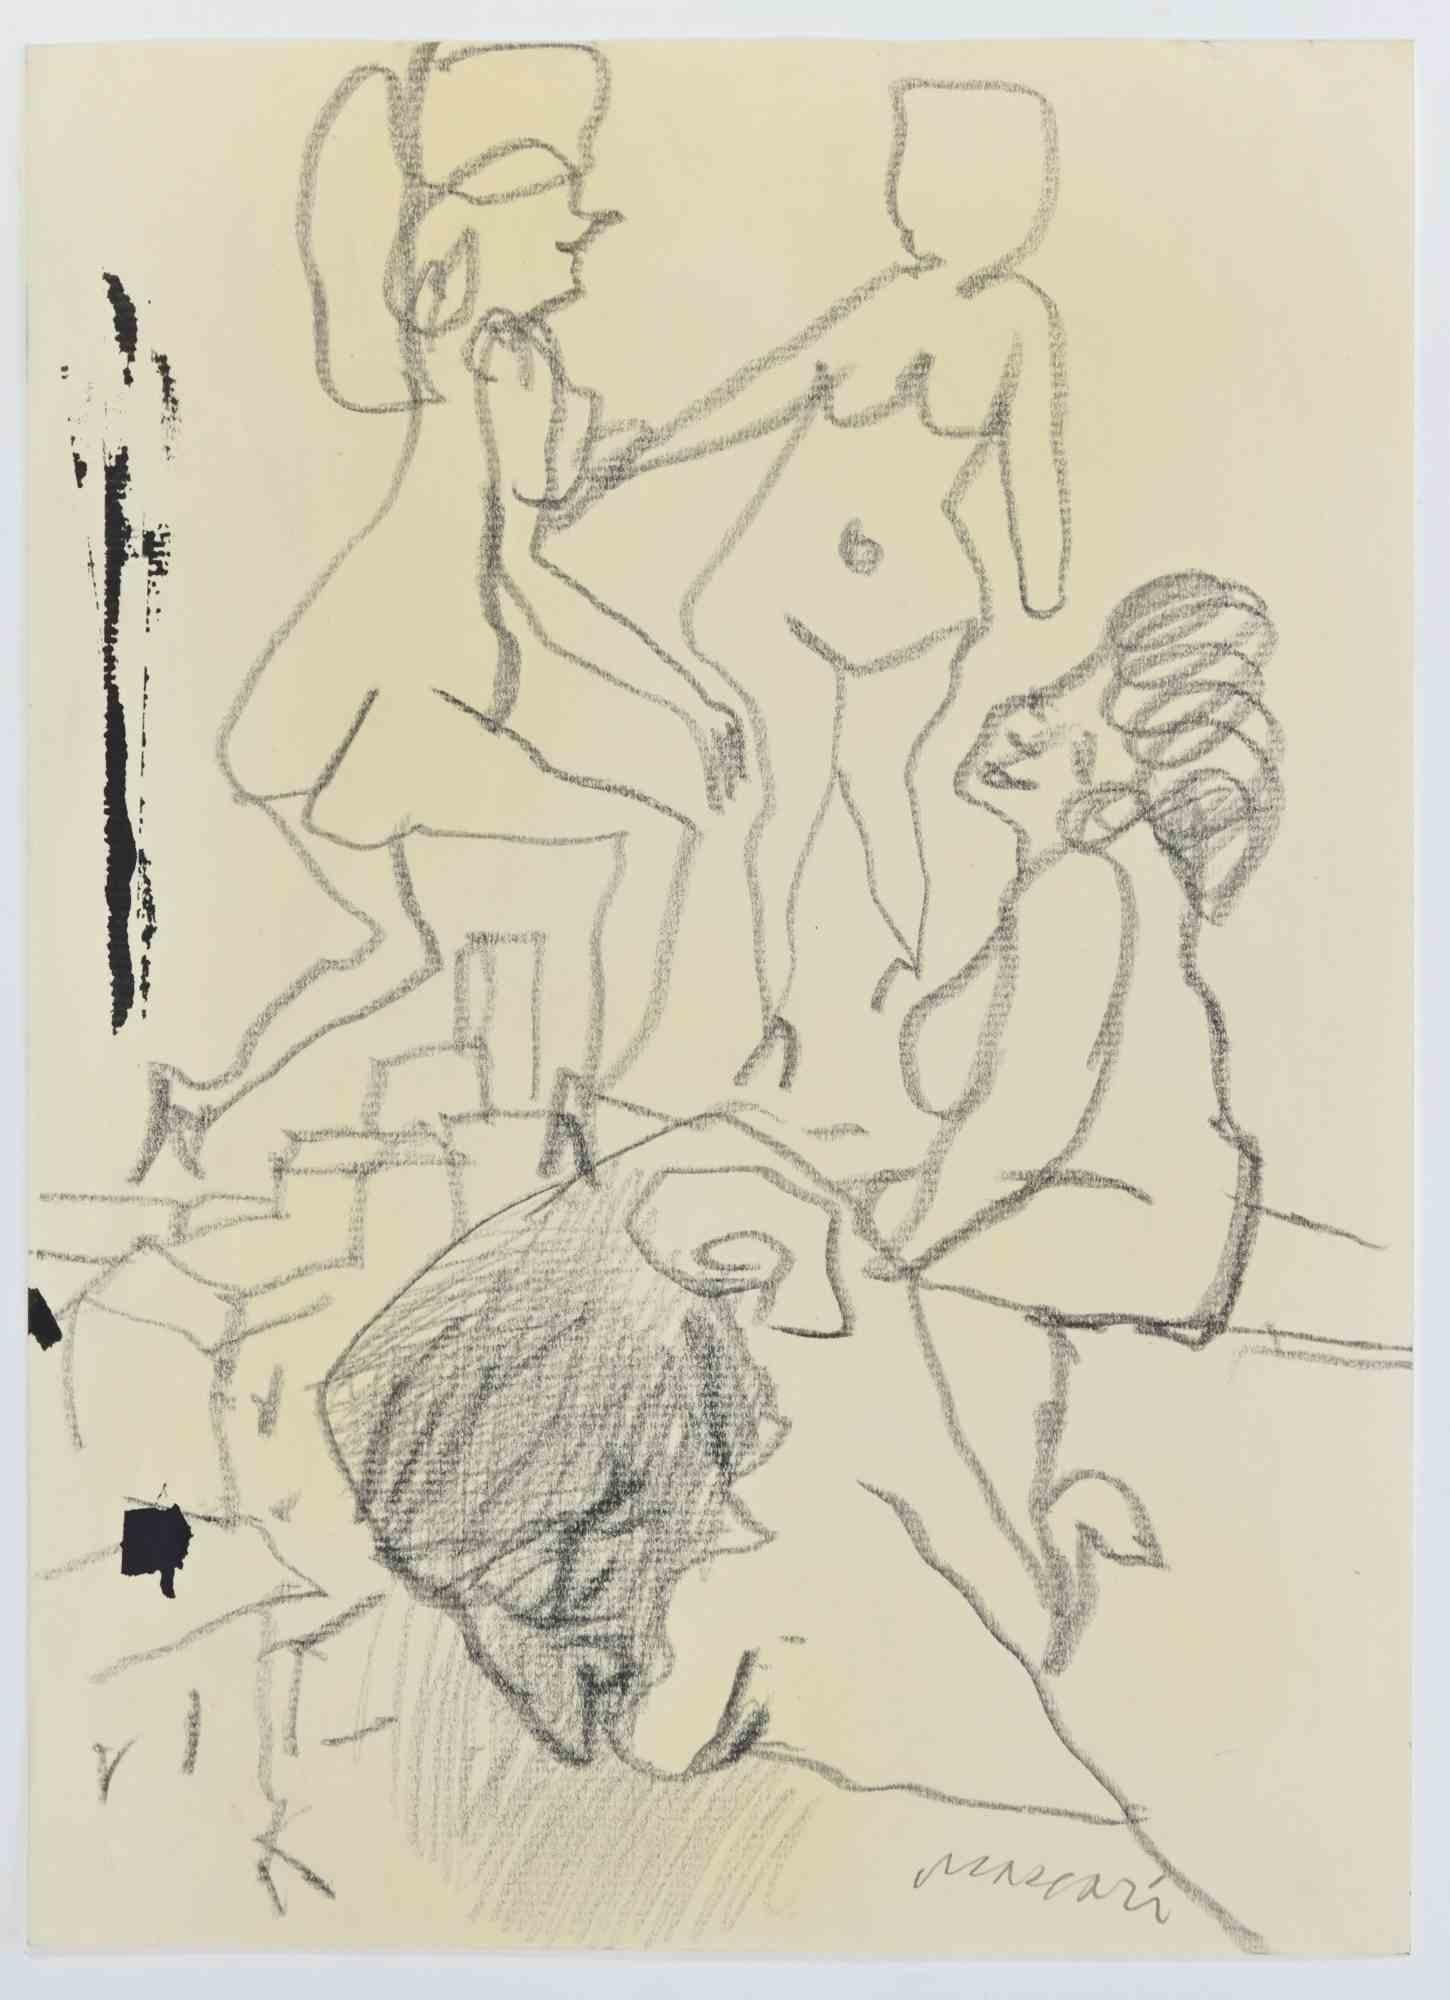 Erotische Szene ist eine Bleistiftzeichnung realisiert von Mino Maccari  (1924-1989) in den 1960er Jahren.

Handsigniert am unteren Rand.

Guter Zustand.

Mino Maccari (Siena, 1924-Rom, 16. Juni 1989) war ein italienischer Schriftsteller, Maler,